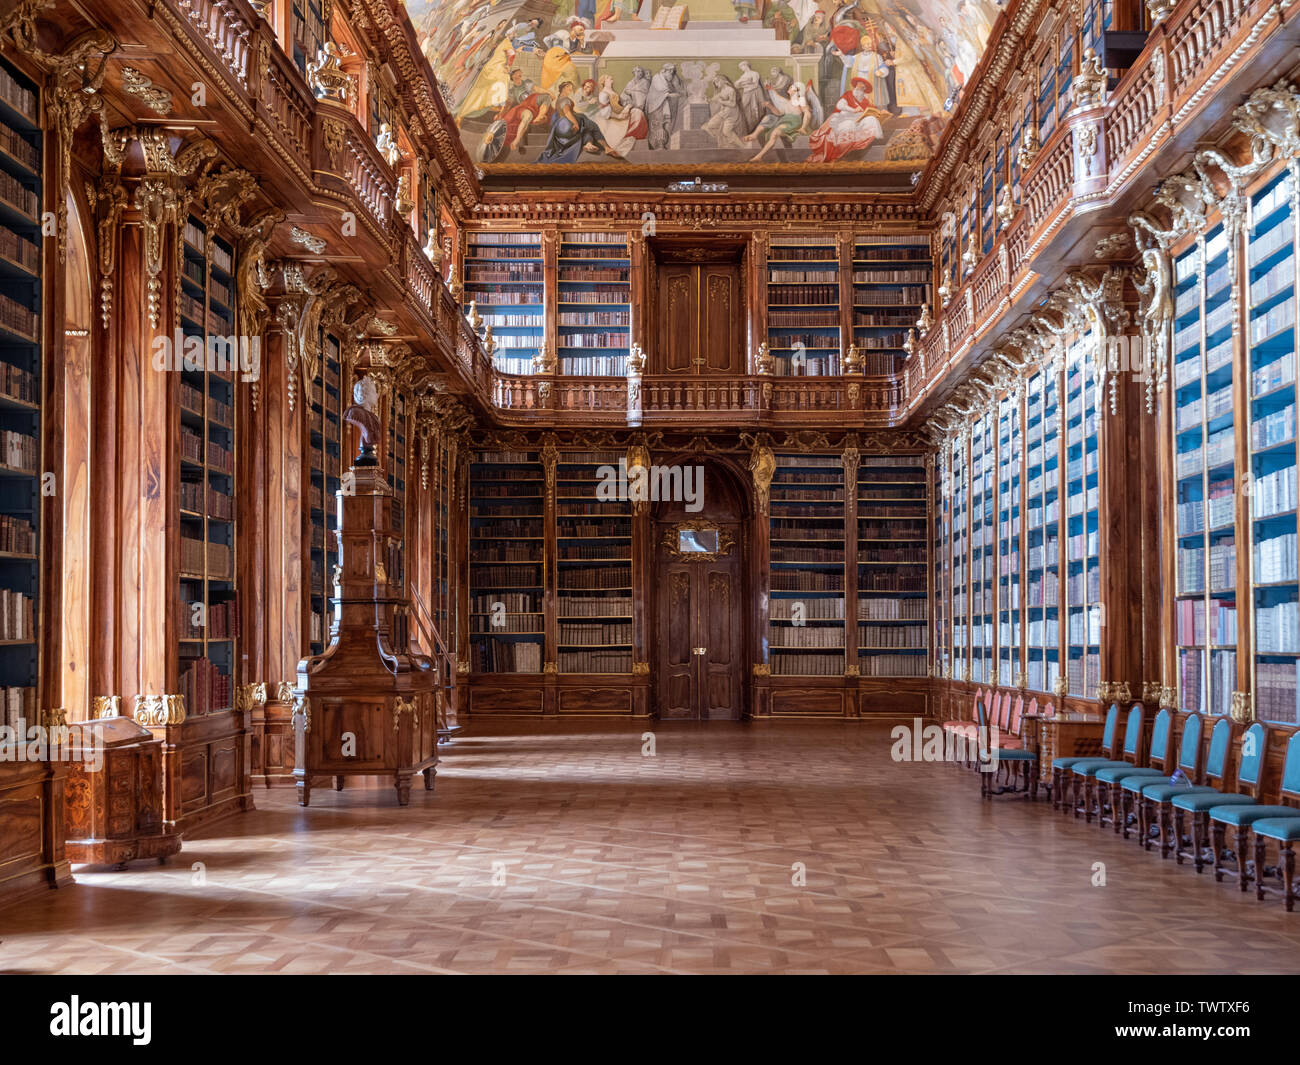 Praga, República Checa - El 8 de junio de 2019 el monasterio de Strahov: Interior de la biblioteca, la sala de Filosofía. Una famosa Biblioteca barroca en Bohemia. Foto de stock